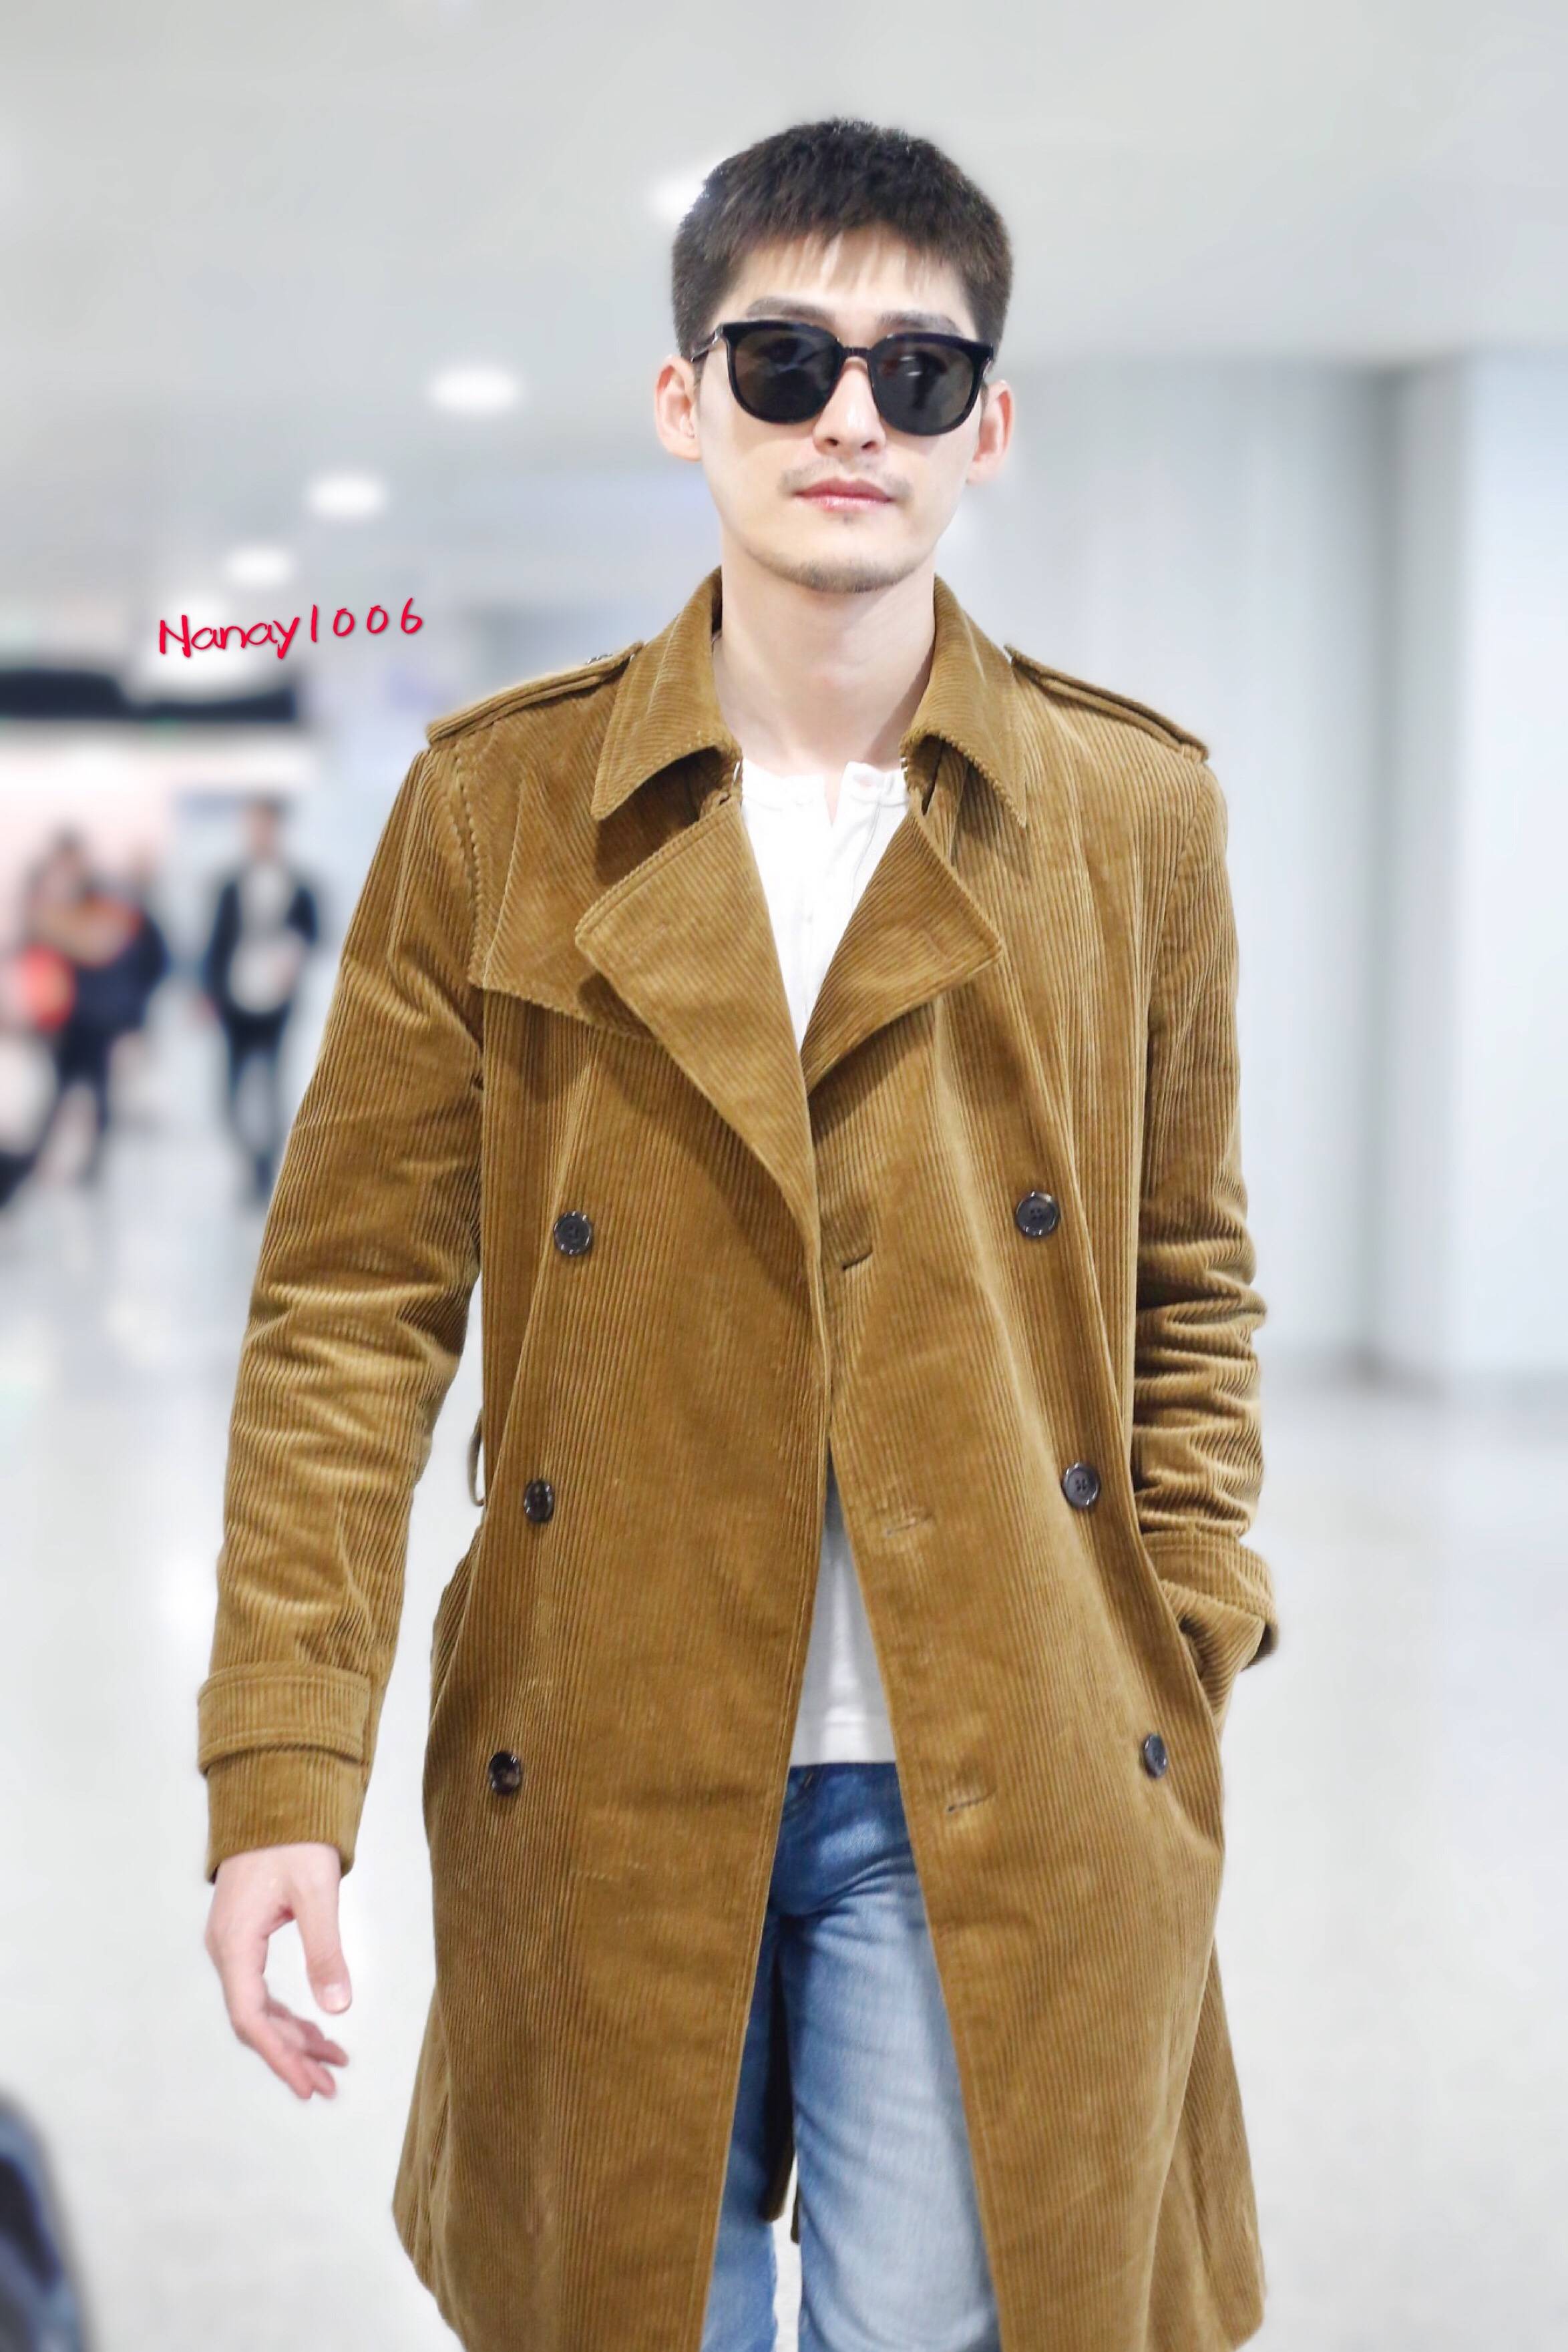 张翰戴墨镜穿棕色长款大衣现身机场,皮肤白皙帅气十足